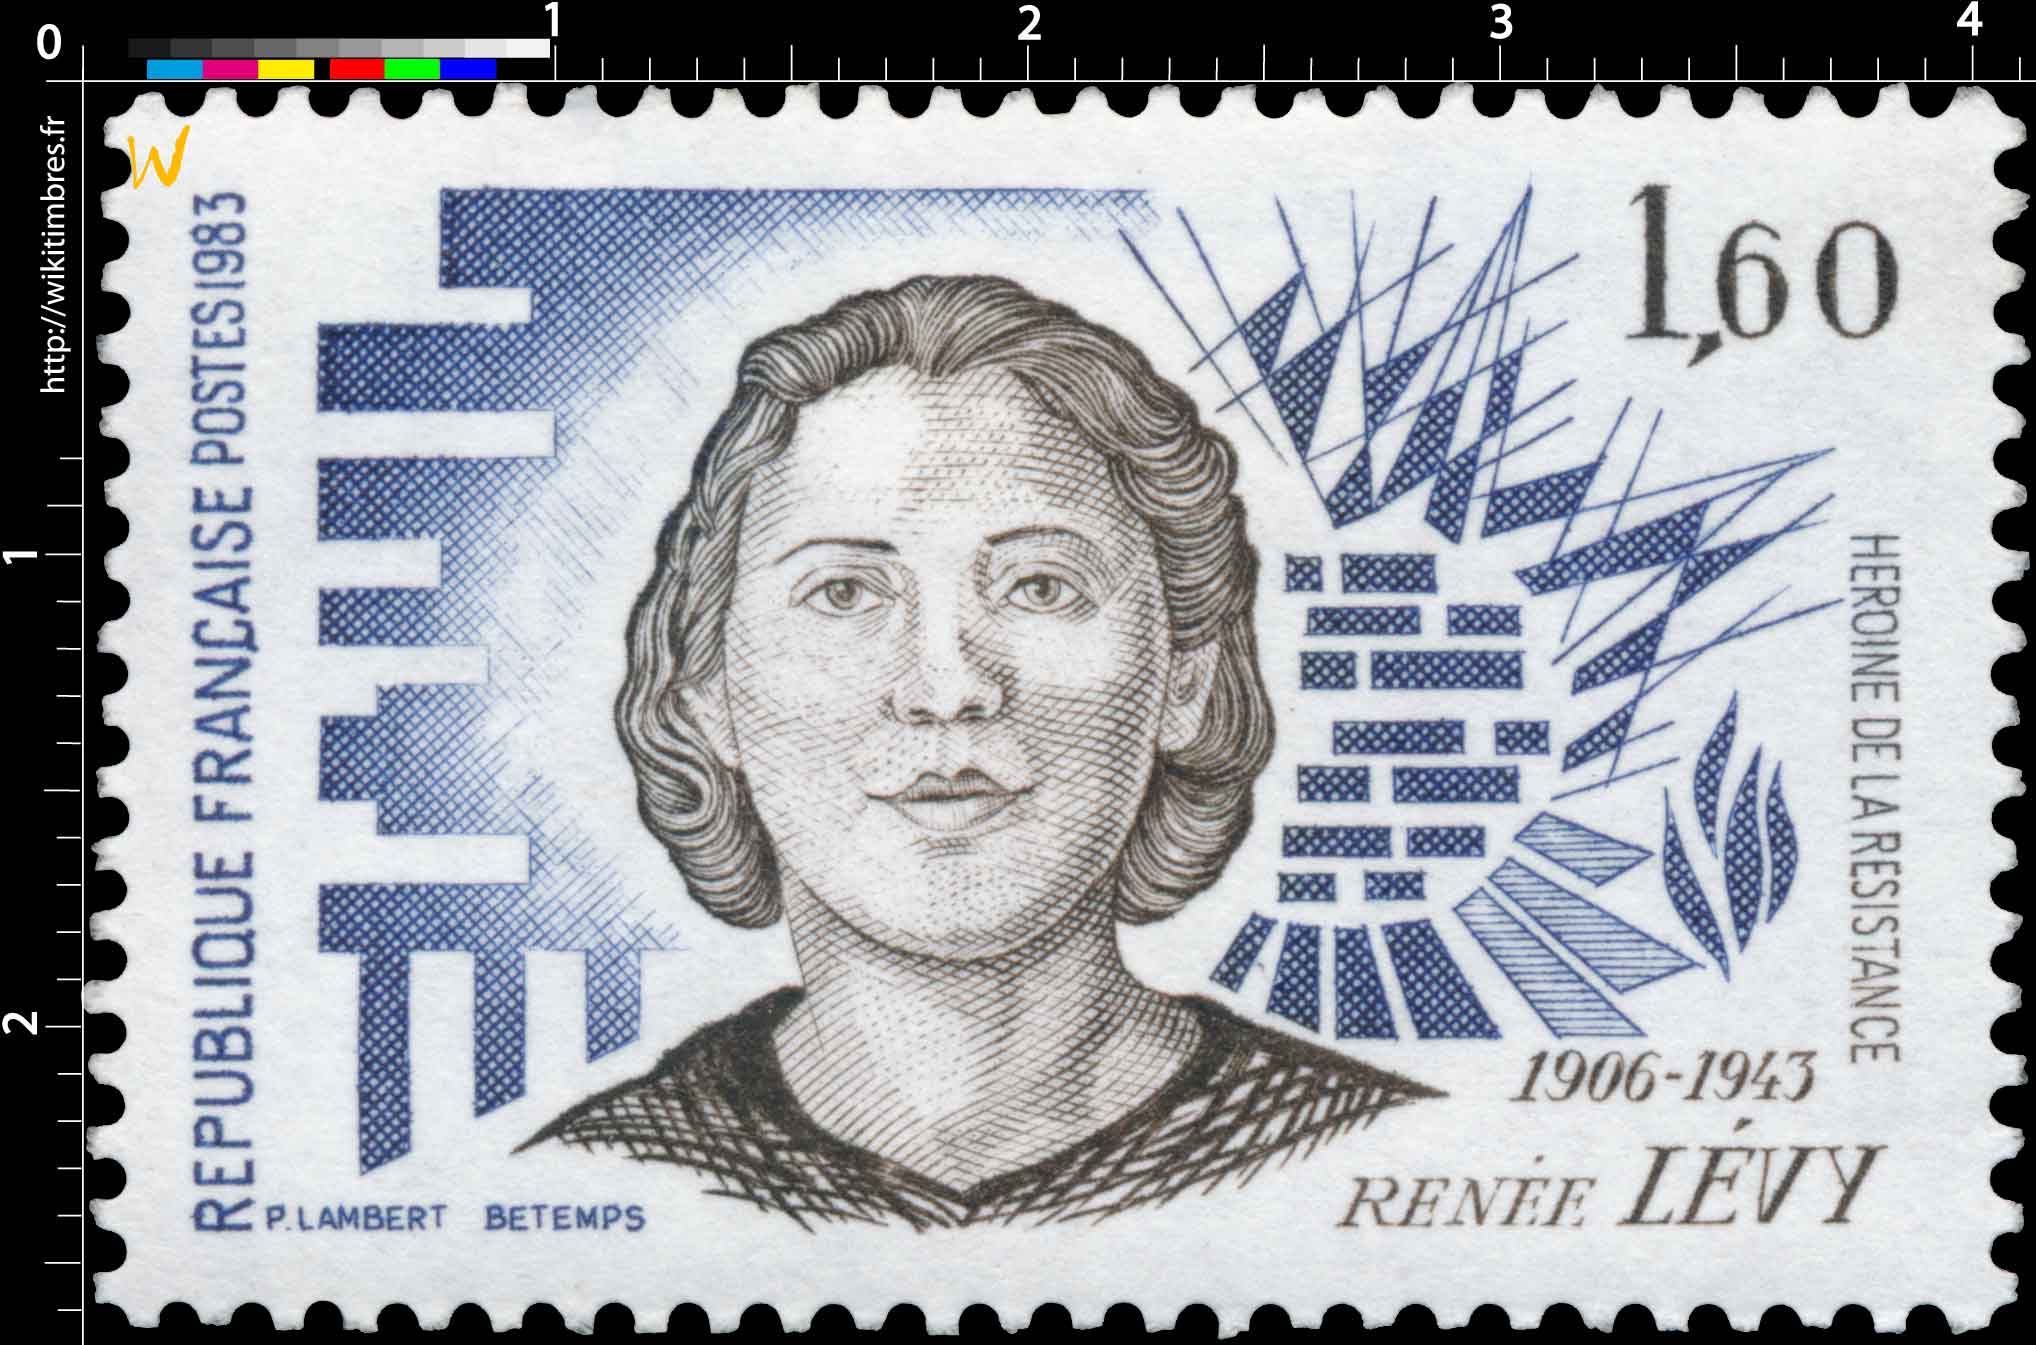 1983 RENÉE LÉVY 1906-1943 HÉROÏNE DE LA RÉSISTANCE